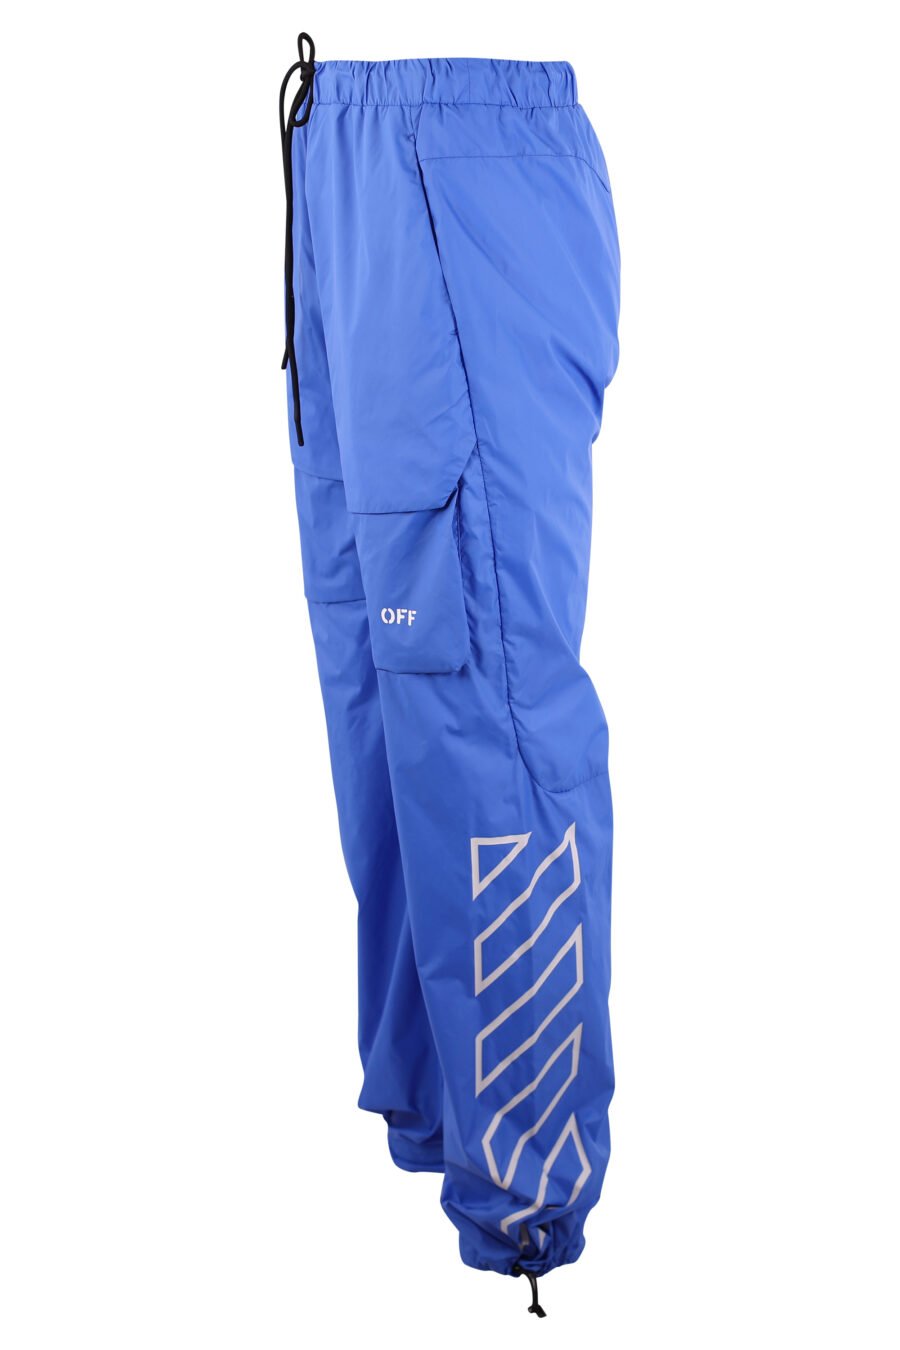 Calças cargo azul com logótipo branco "Diagonais" - IMG 3188